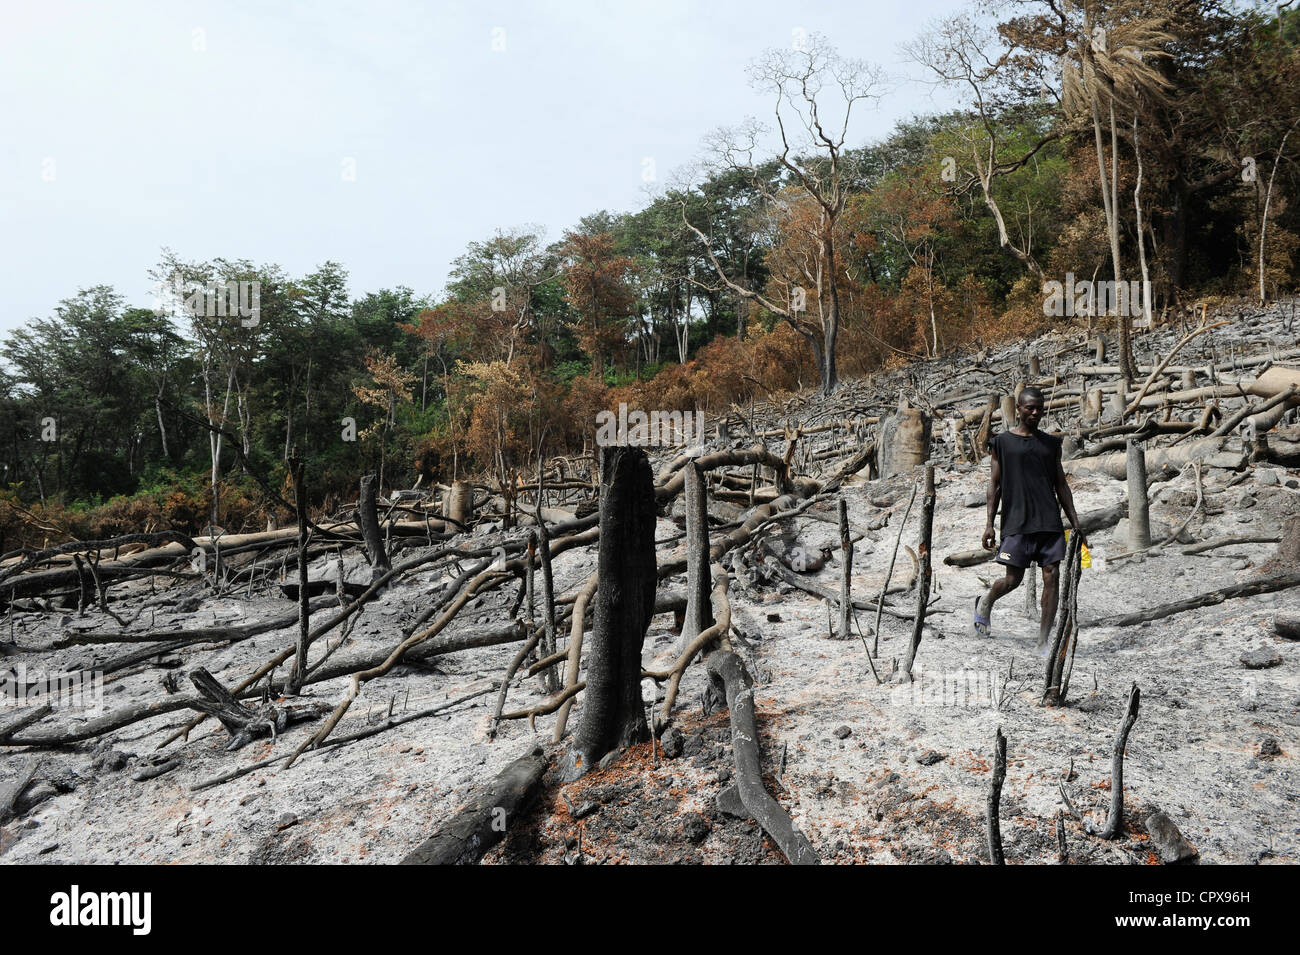 SIERRA LEONE, Kent, die illegale Abholzung des Regenwaldes an der westlichen Bereich Halbinsel Wald, das Holz wird für Kohle und Brennholz verwendet Stockfoto